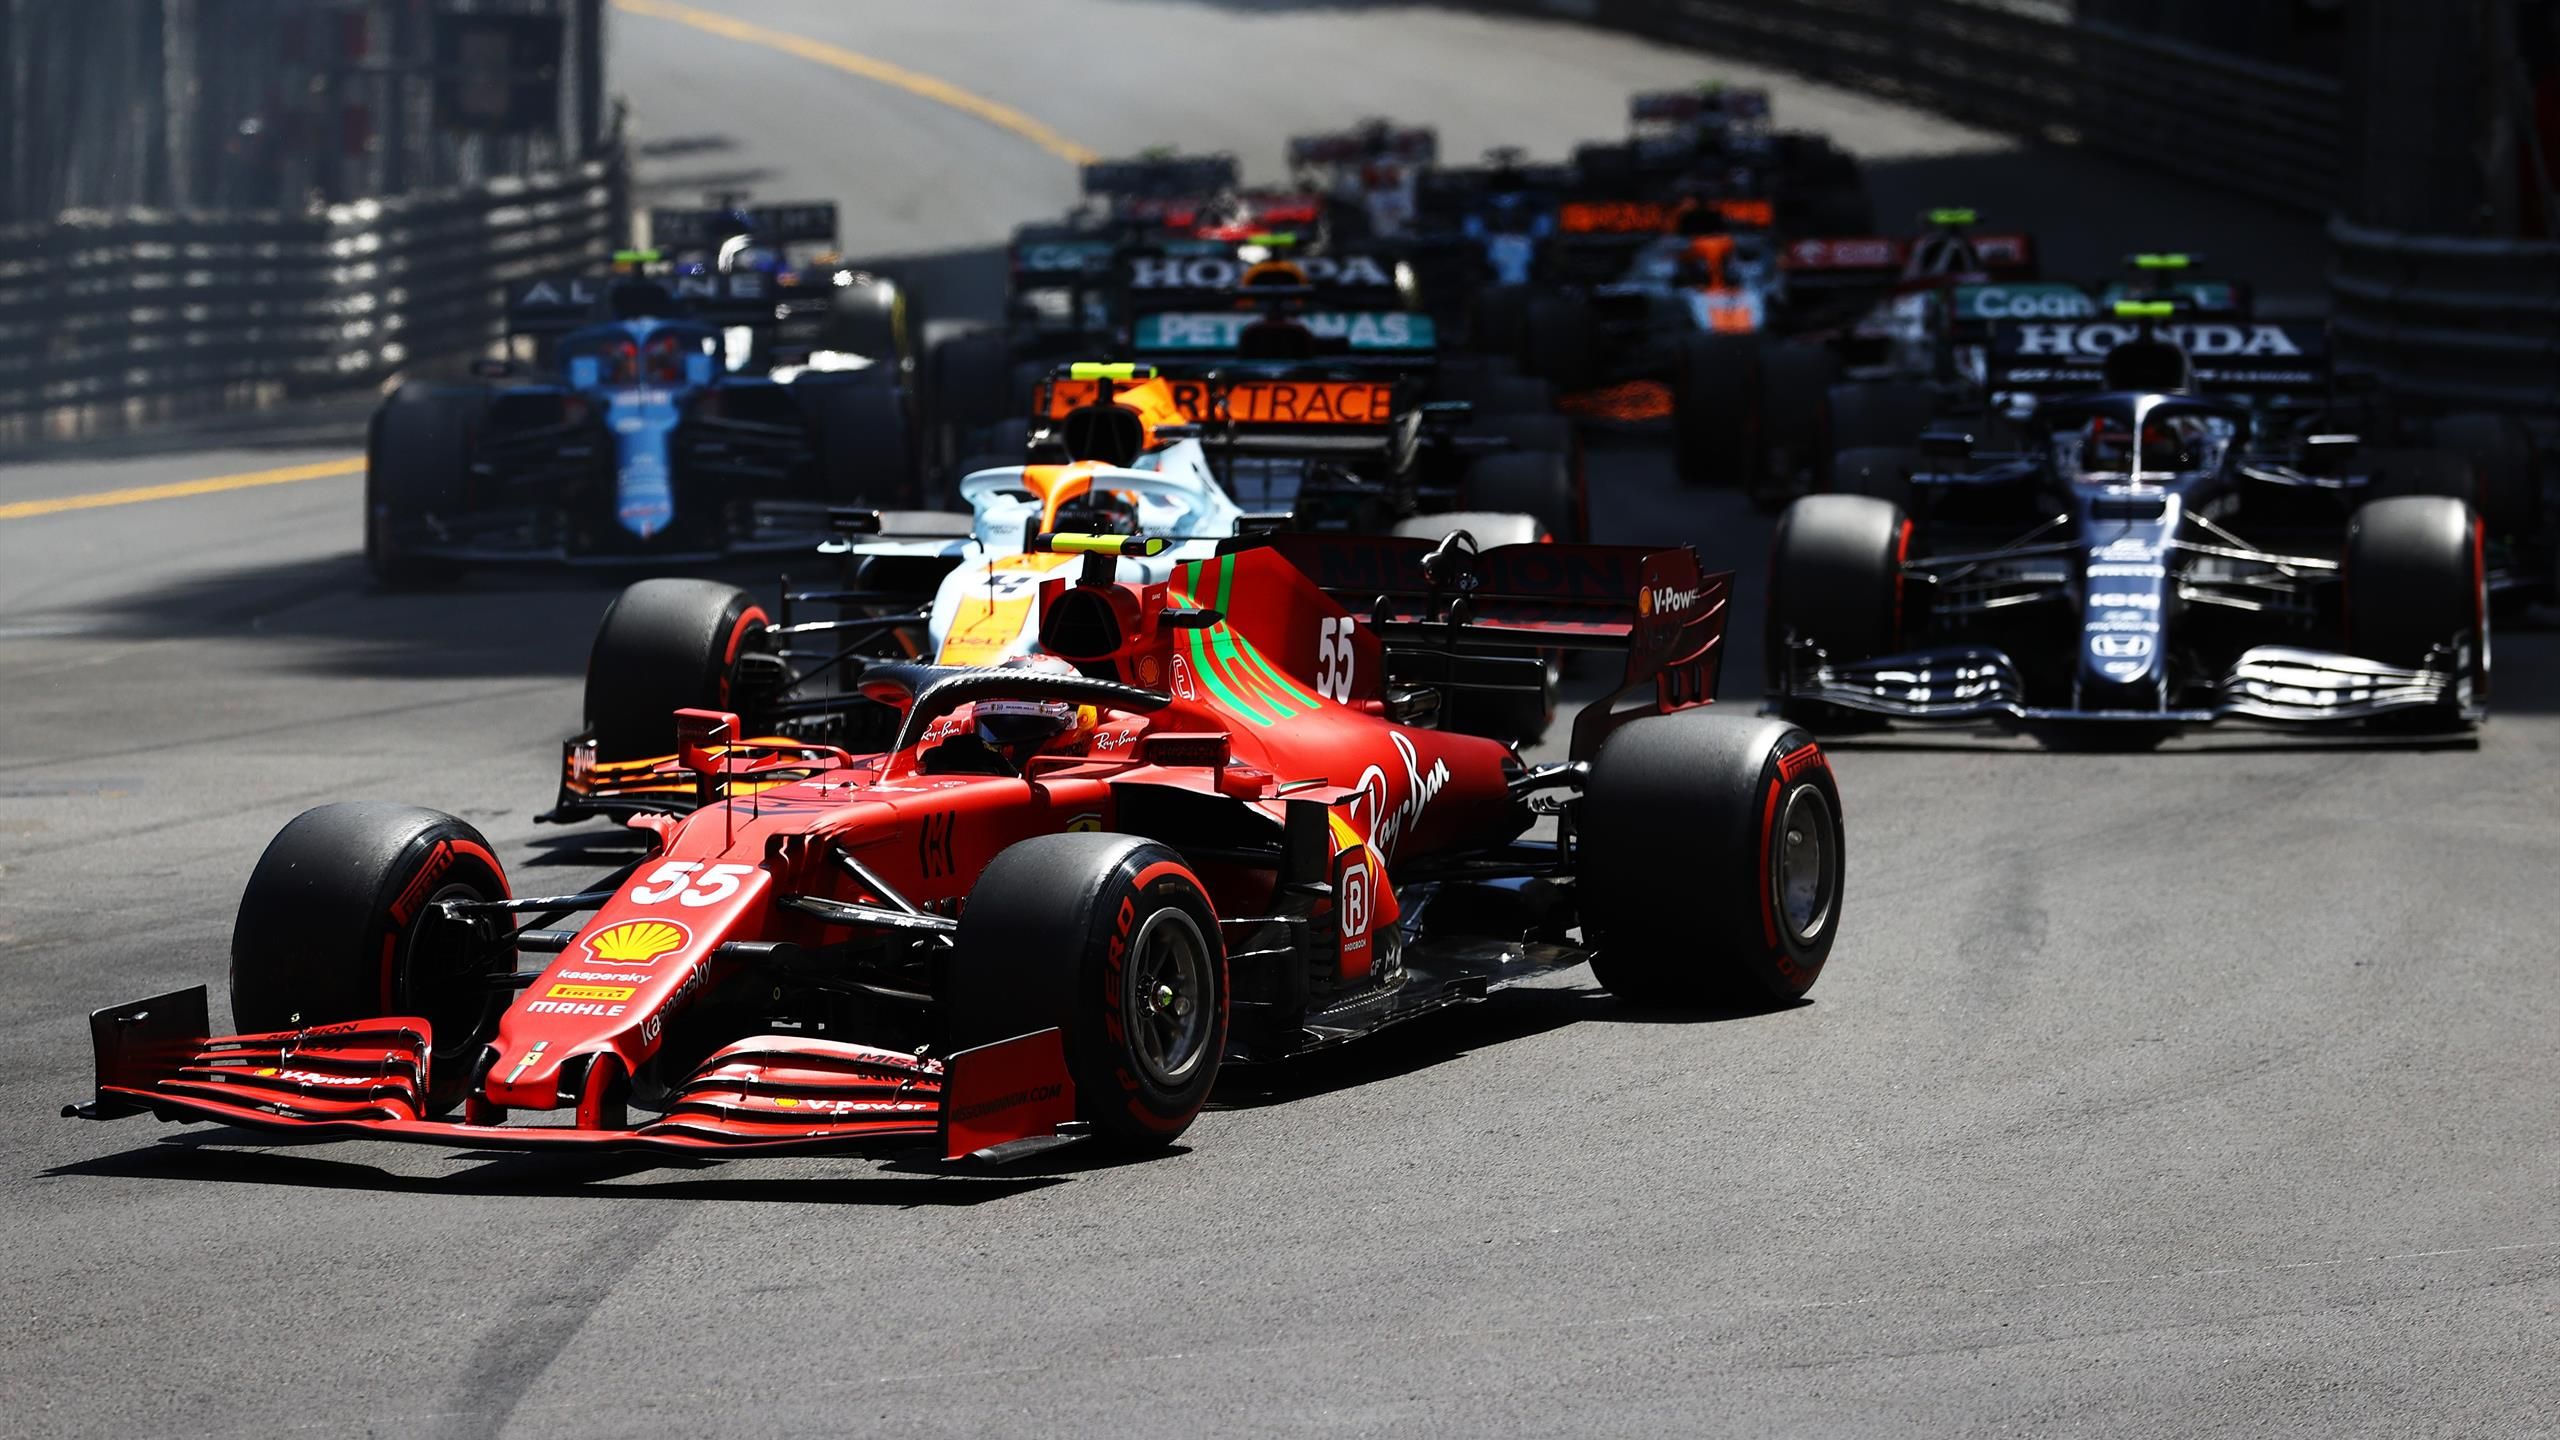 Formel 1 Kalender 2022 mit vielen Neuerungen - viele Rennen in engem Takt, Monaco verliert Sonderstellung